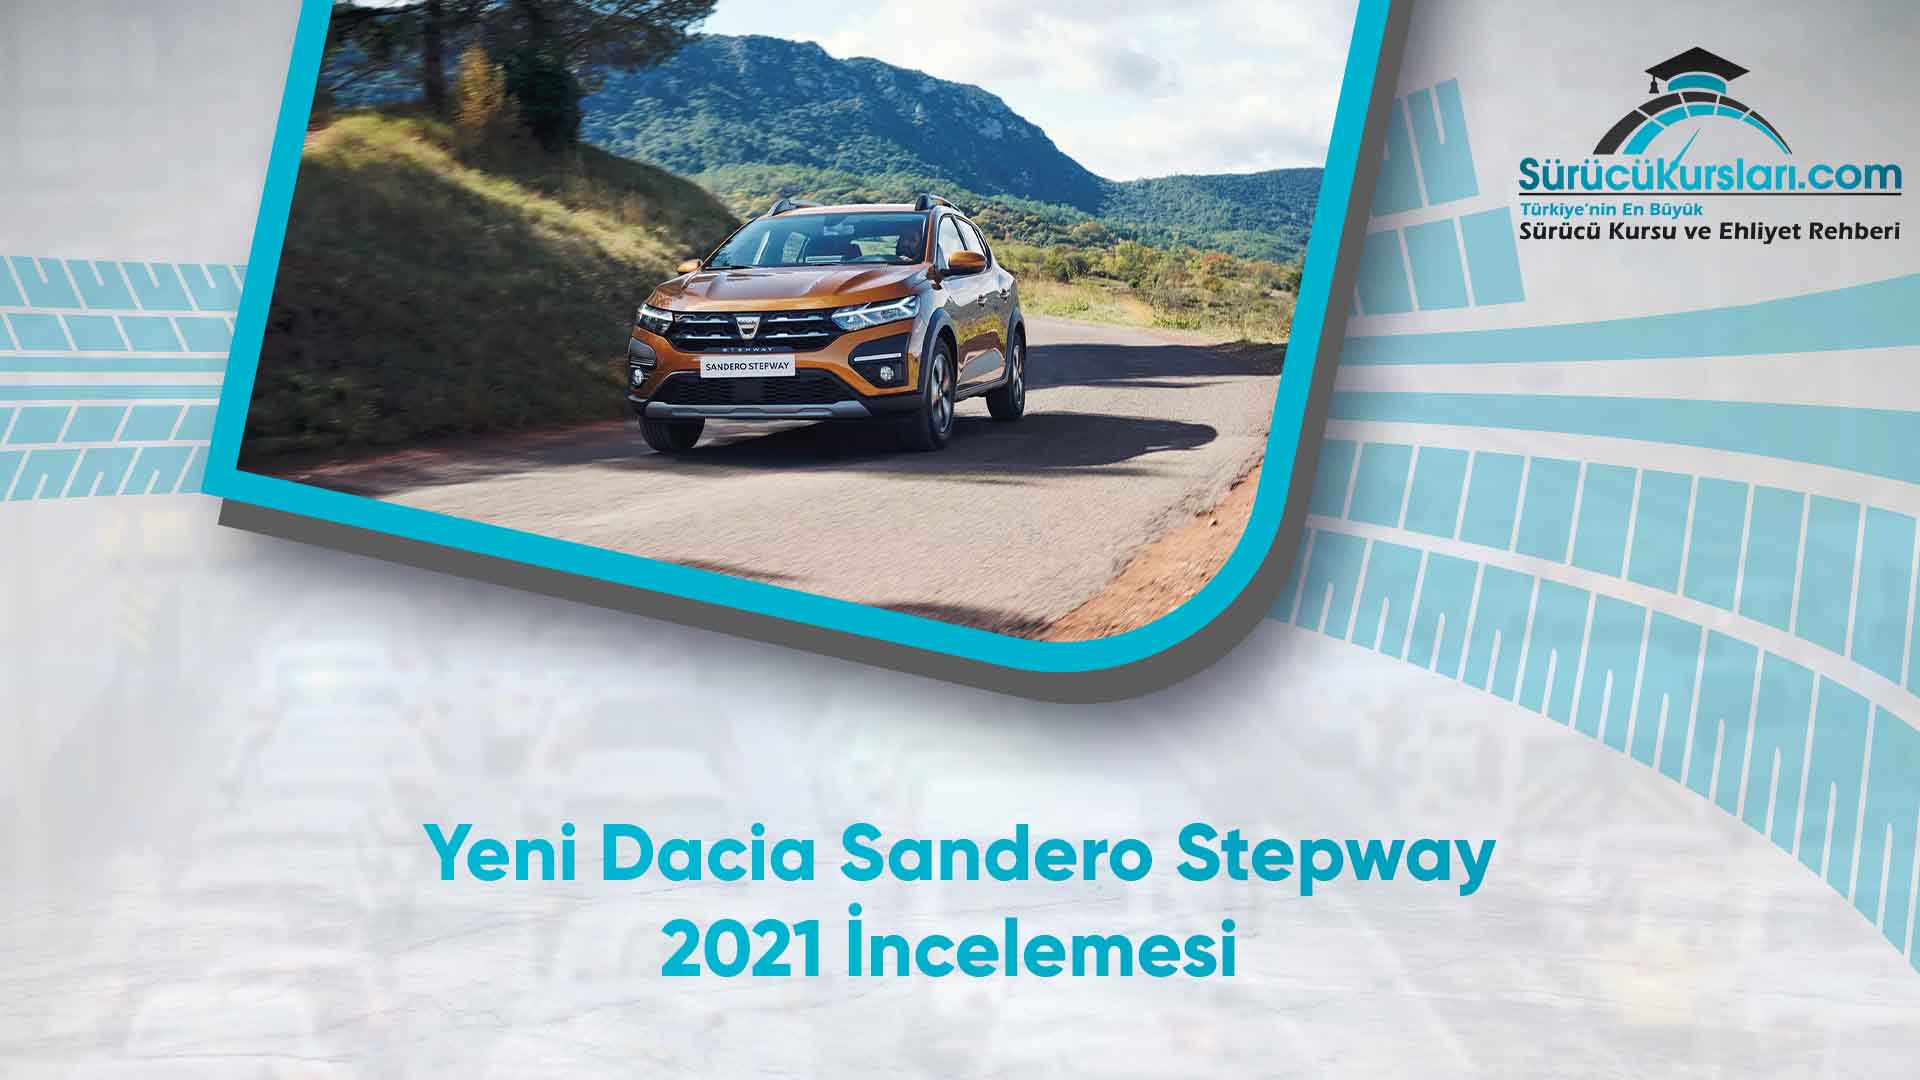 Yeni Dacia Sandero Stepway 2021 İncelemesi